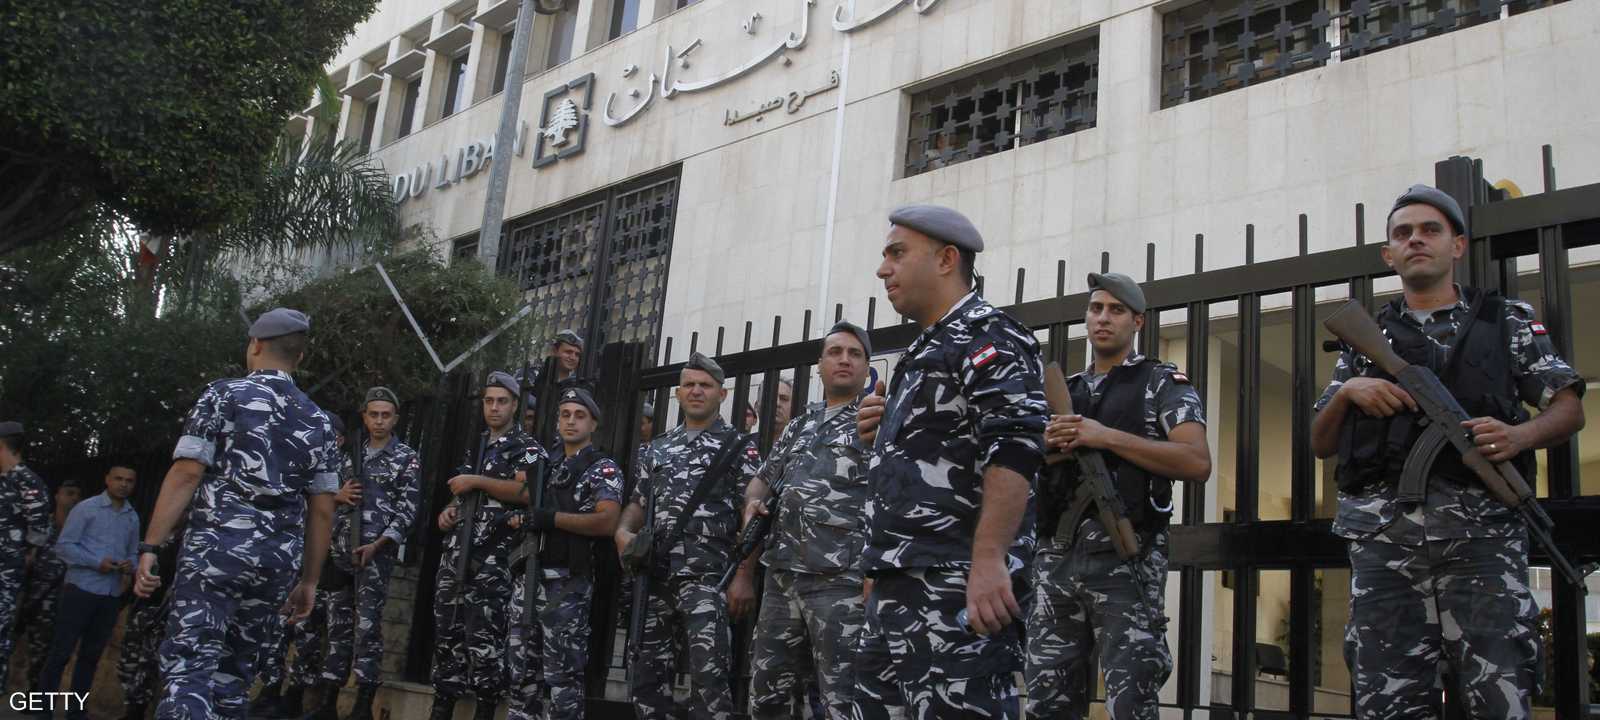 البنوك اللبنانية فتحت أبوابها الجمعة بعد إغلاق لأسبوعين.